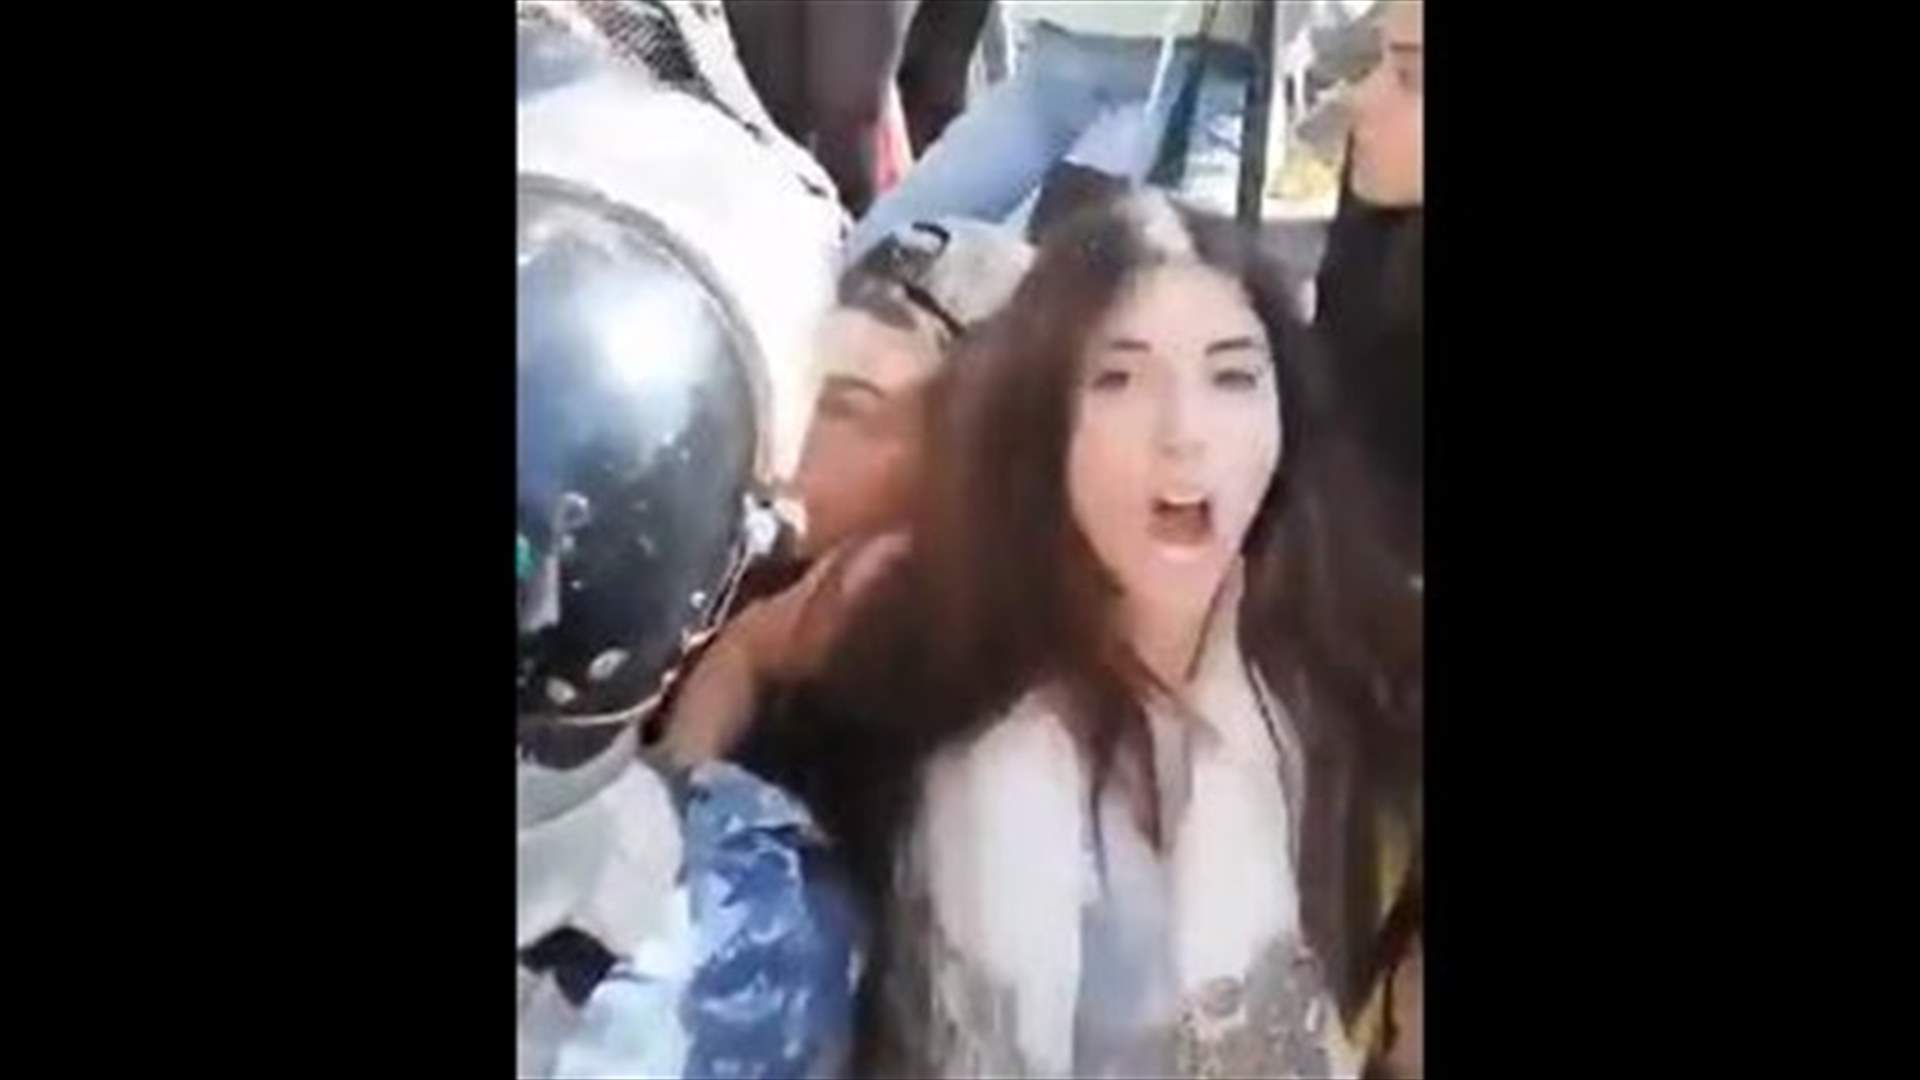 فيديو لشابة في وسط بيروت يُظهر اللحظة التي حاولت فيها إبعاد القوى الأمنية عن صديقها